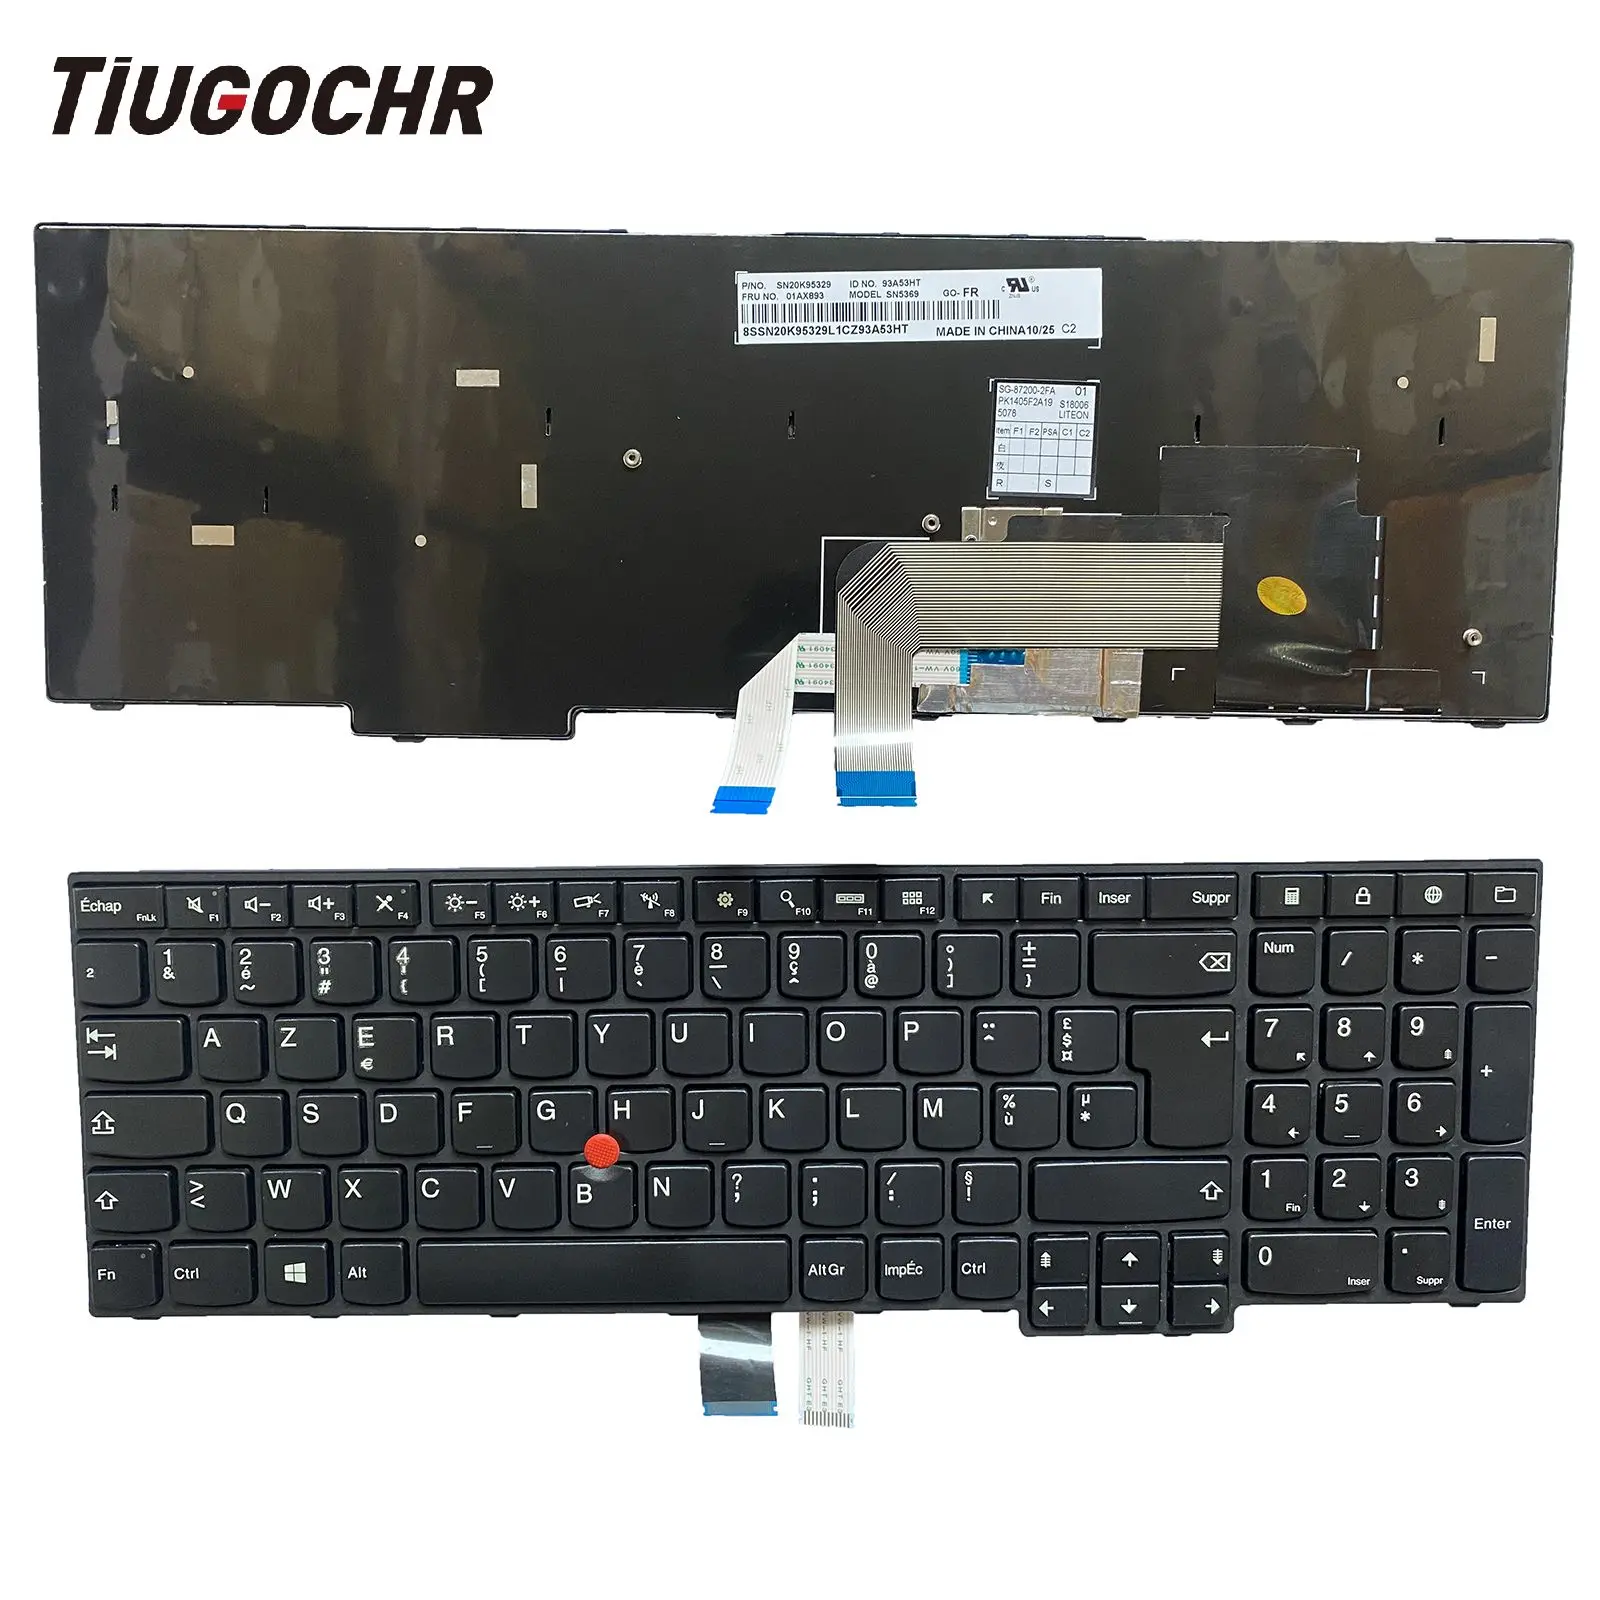 

FR Keyboard for Thinkpad E550 E550C E555 E560 E565 E560c (20EV 20EW 20DF 20DG 20E0)